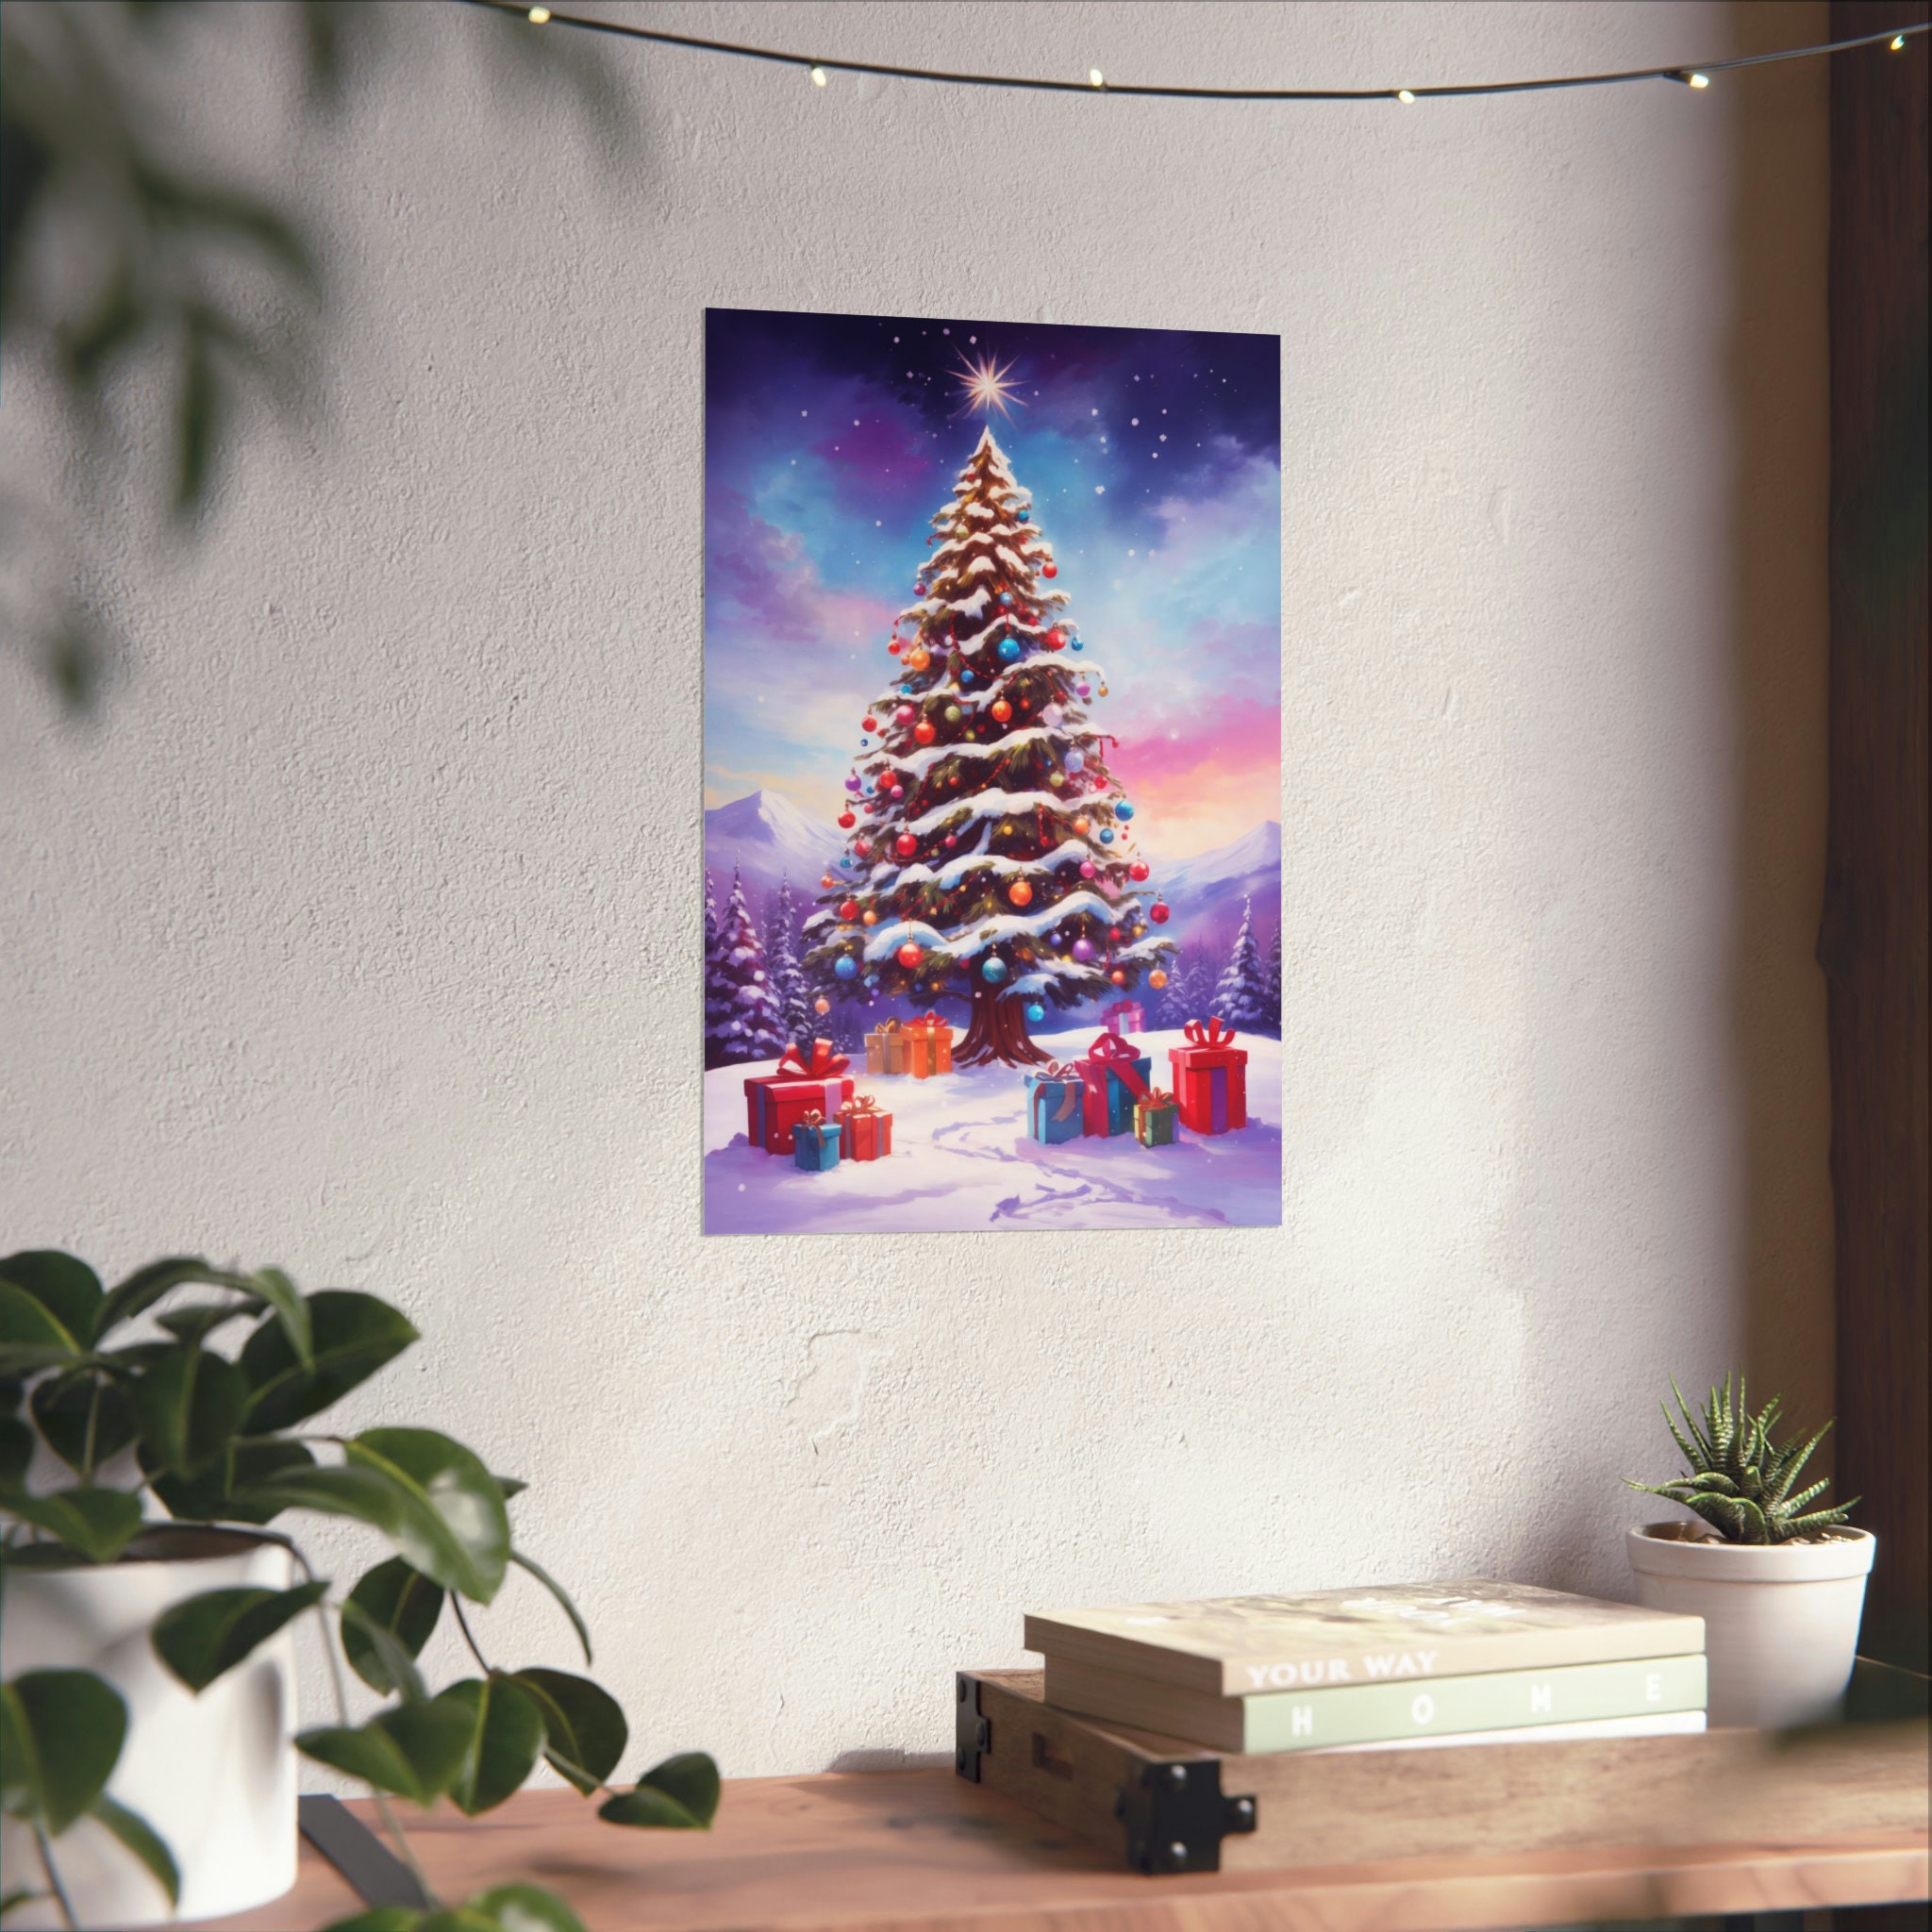 Printed Christmas Tree Wall Art Poster Holiday Seasonal Festive Home ...